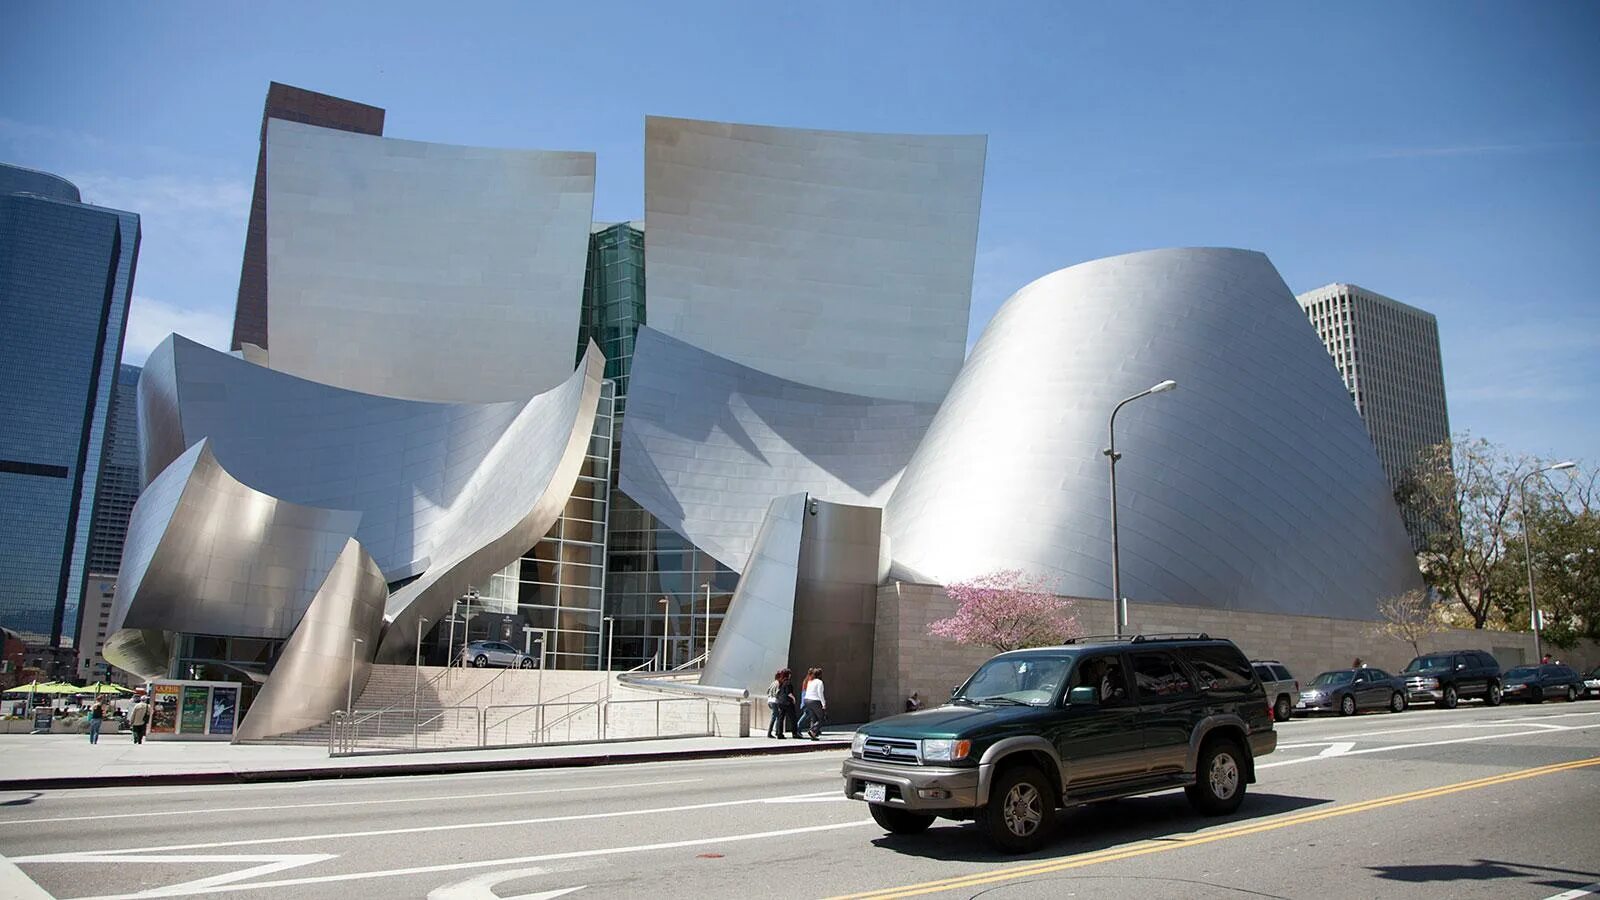 Фрэнк Гери музей Уолта Диснея. Фрэнк Гери концертный зал. Концертный зал Уолта Диснея в Лос-Анджелесе, США. Здание концертного зала имени Уолта Диснея в Лос-Анджелесе. Концертный зал уолта диснея